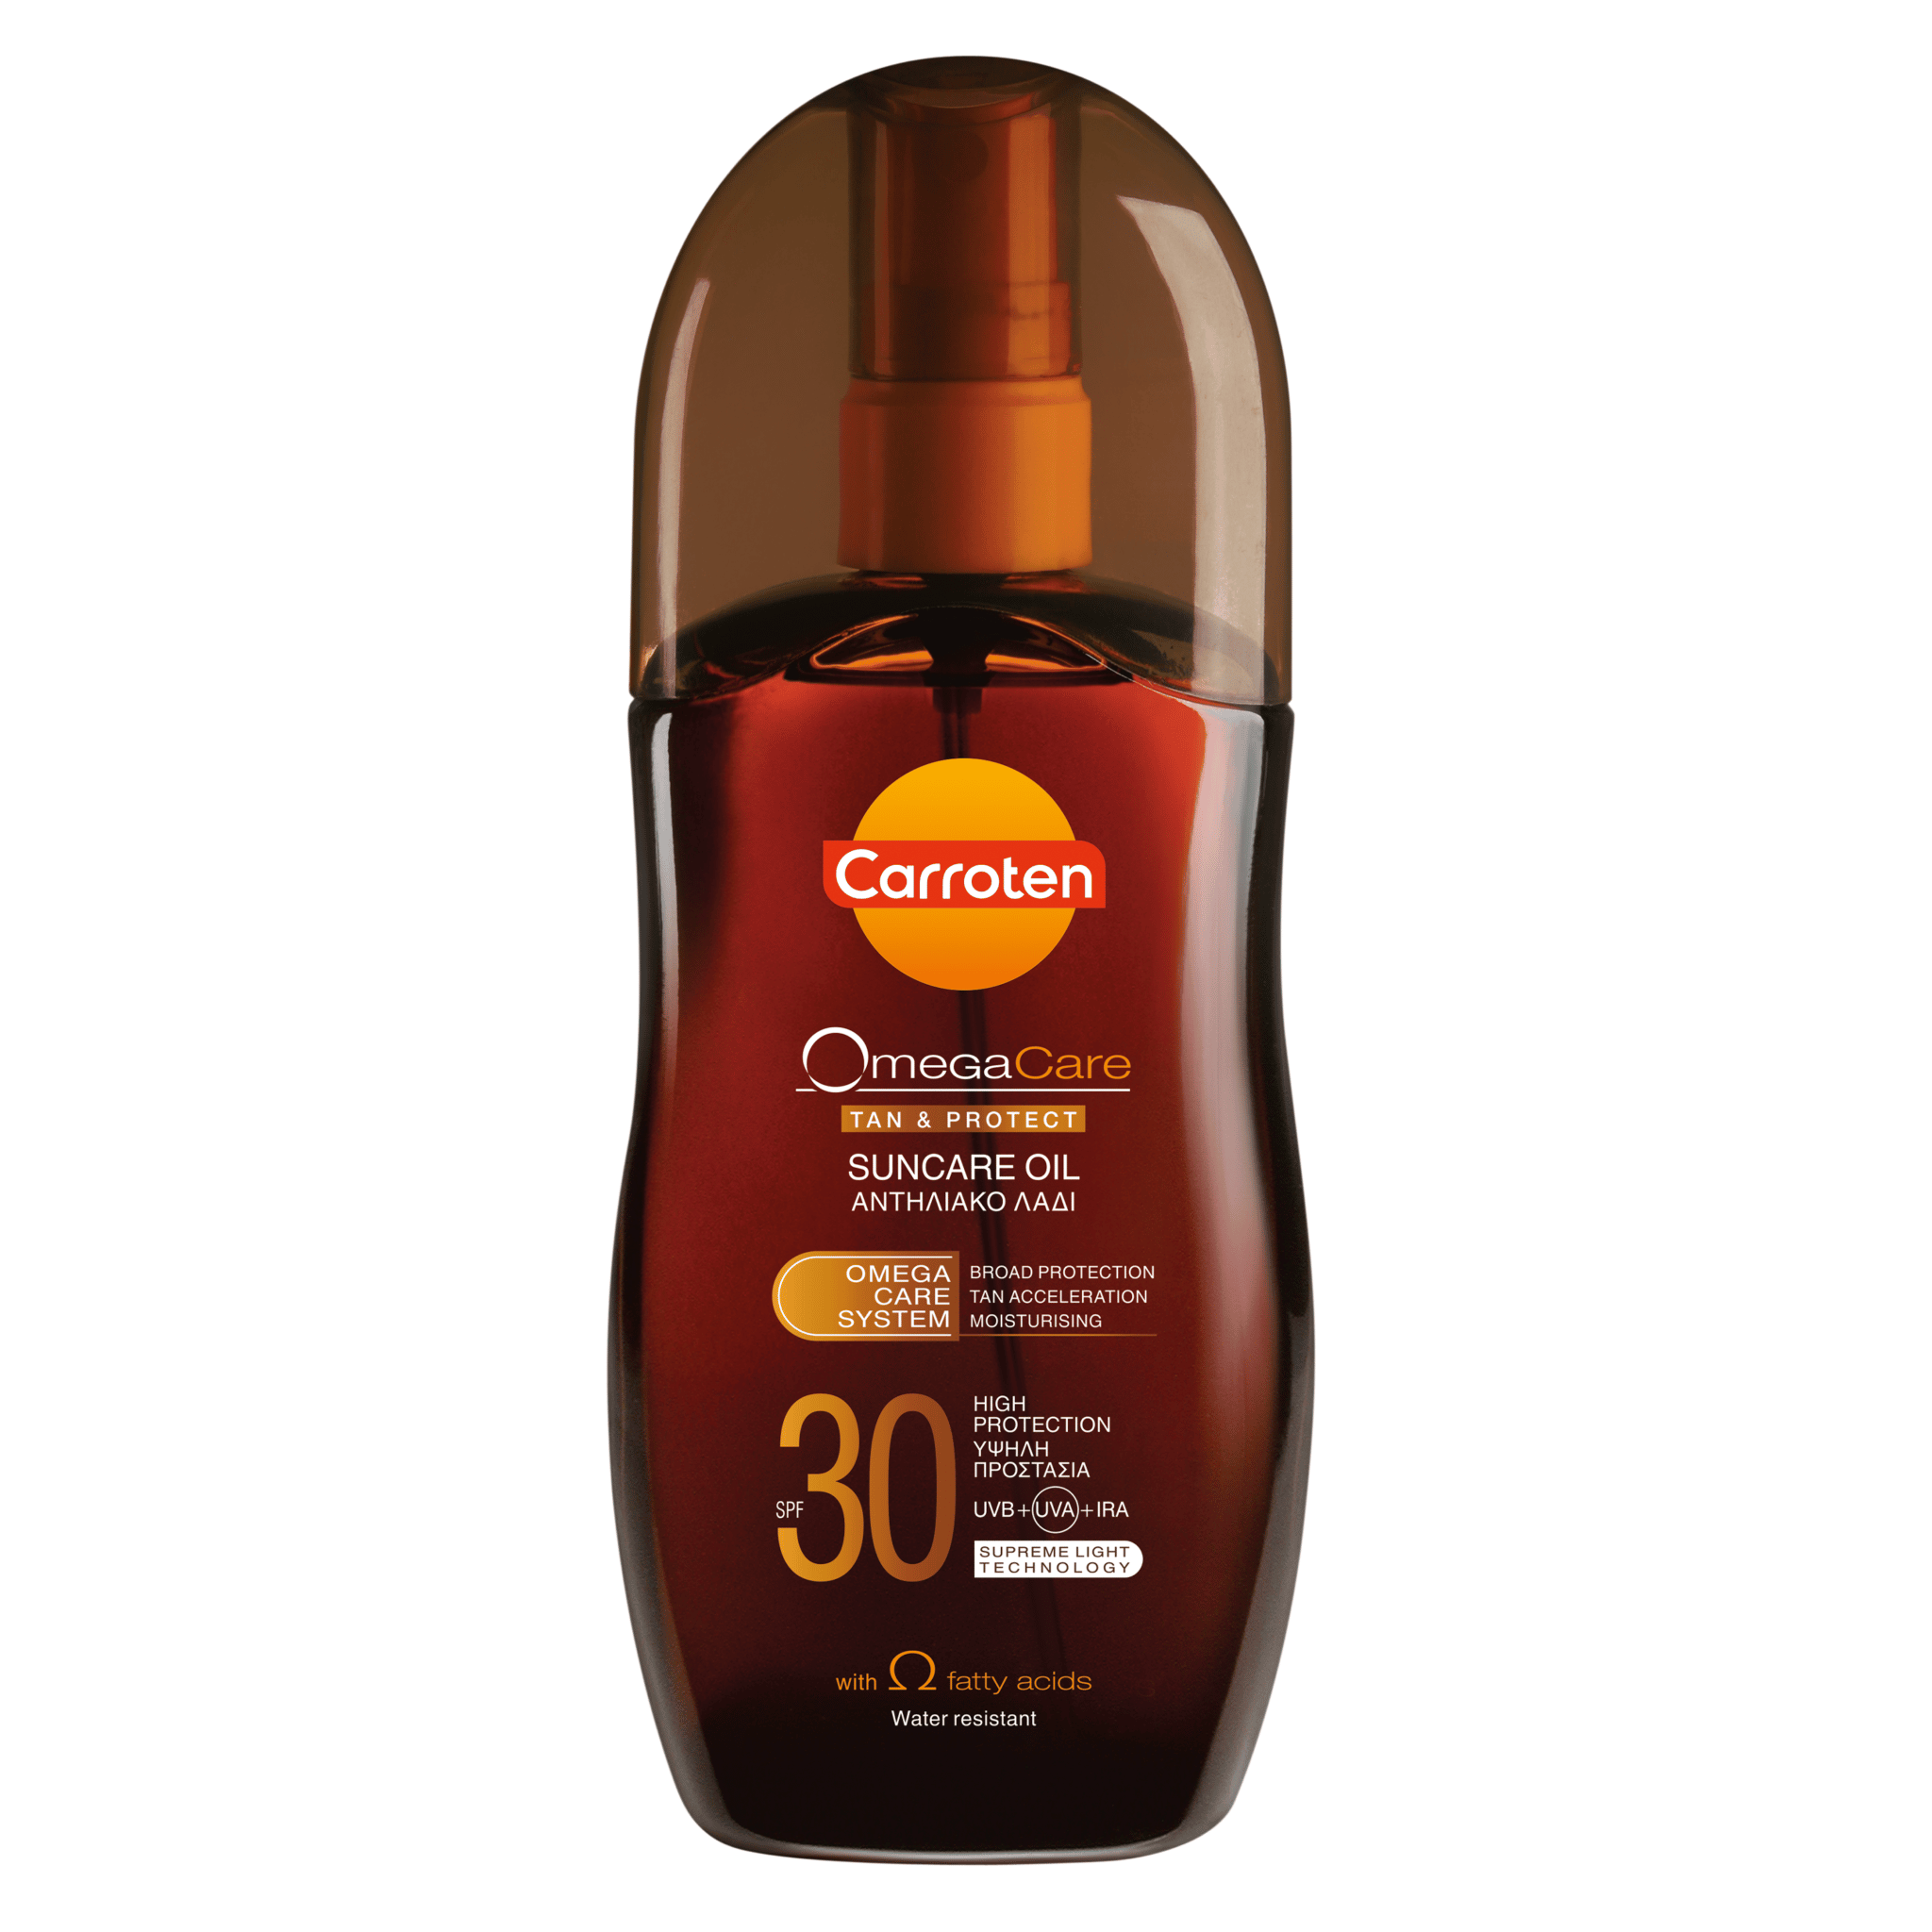 Carroten sunscreen oil omega care SPF 30 125ml